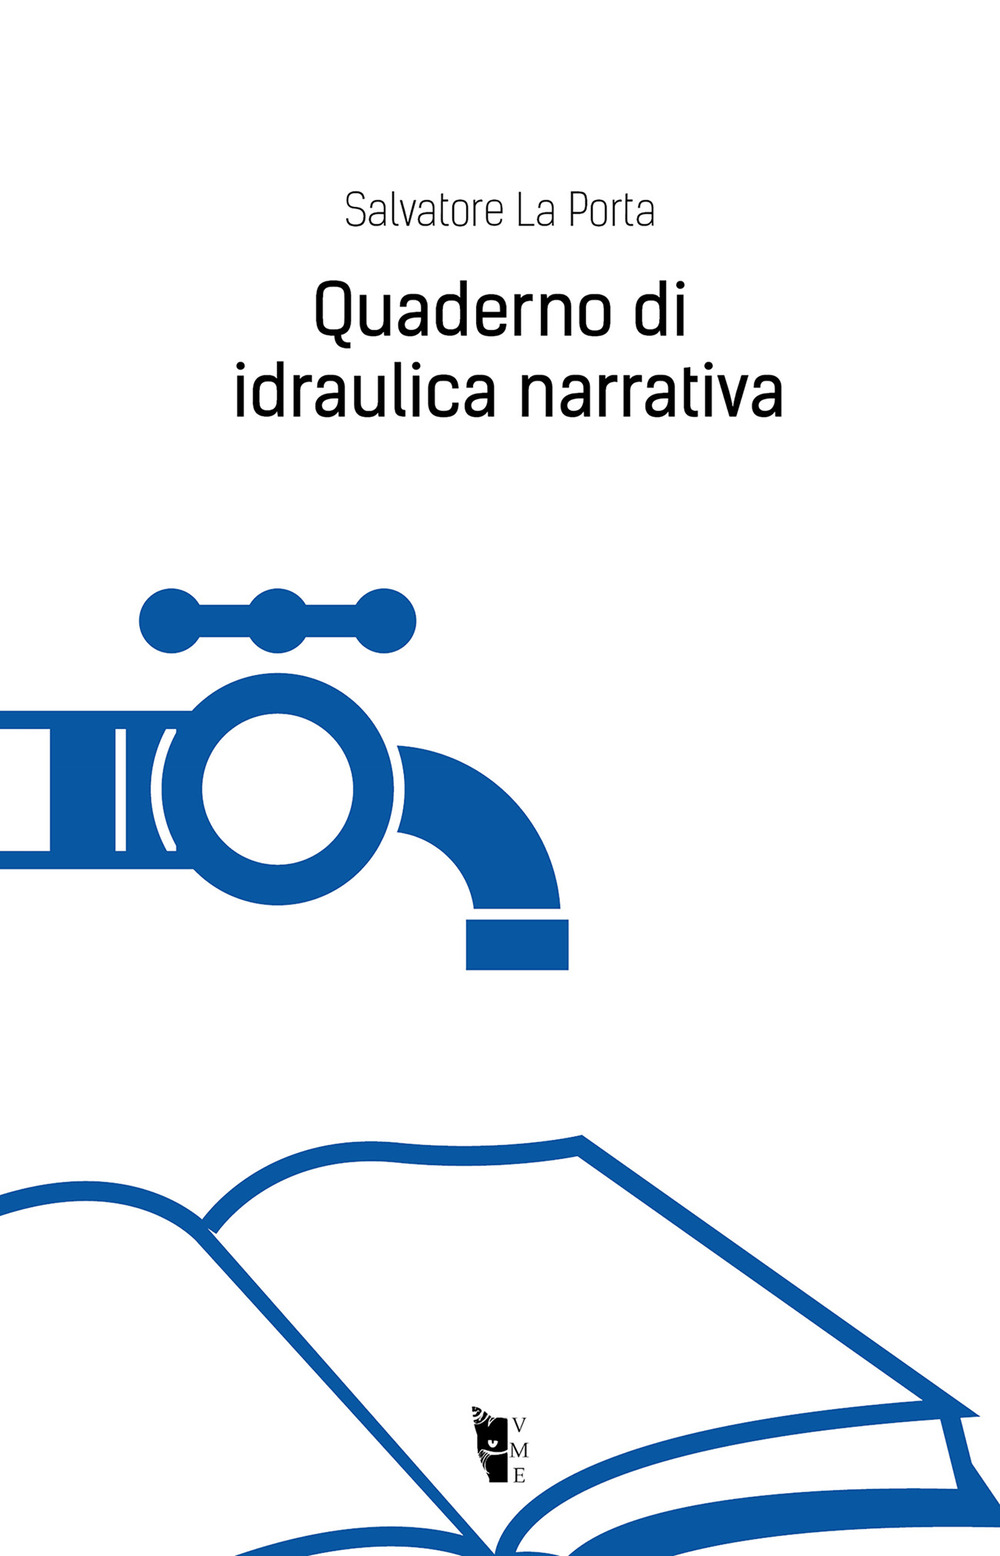 Image of Quaderno di idraulica narrativa